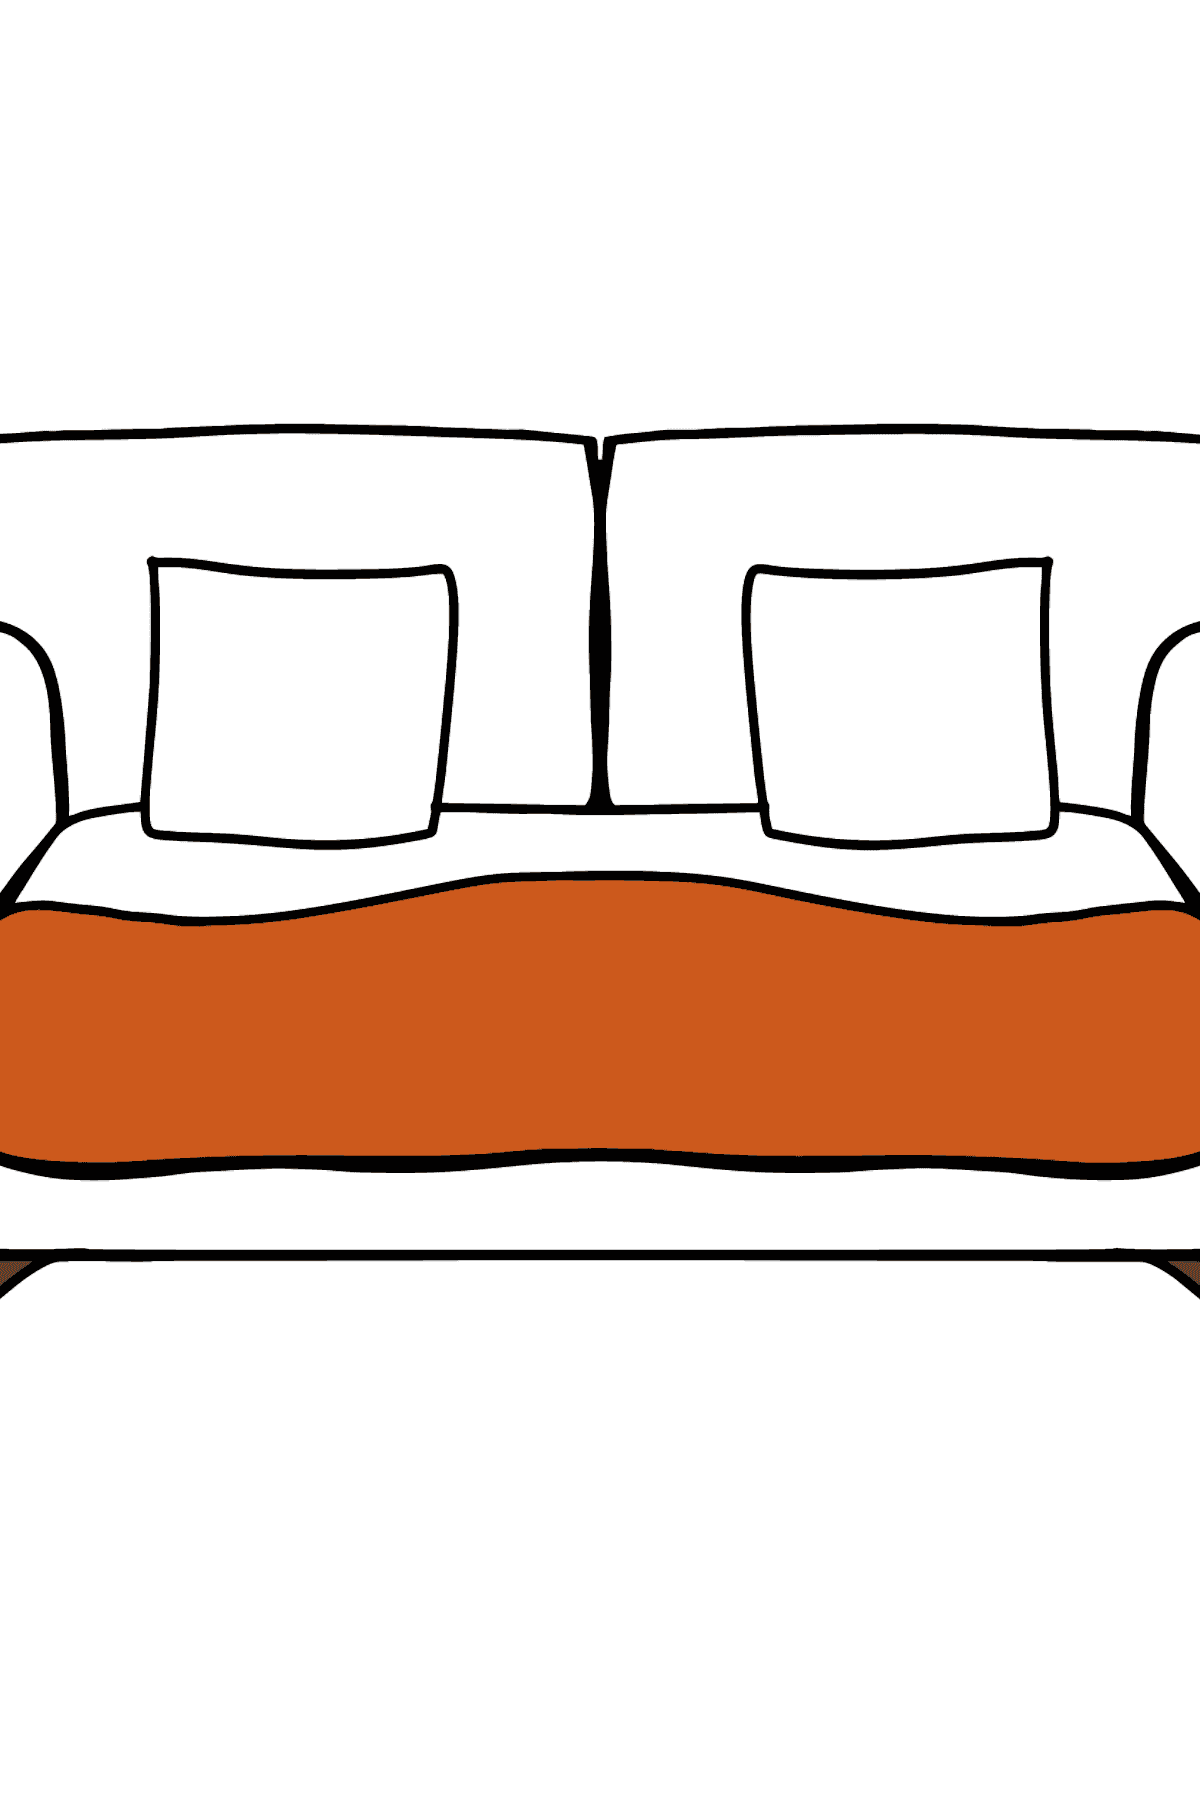 Disegno di divano da colorare - Disegni da colorare per bambini